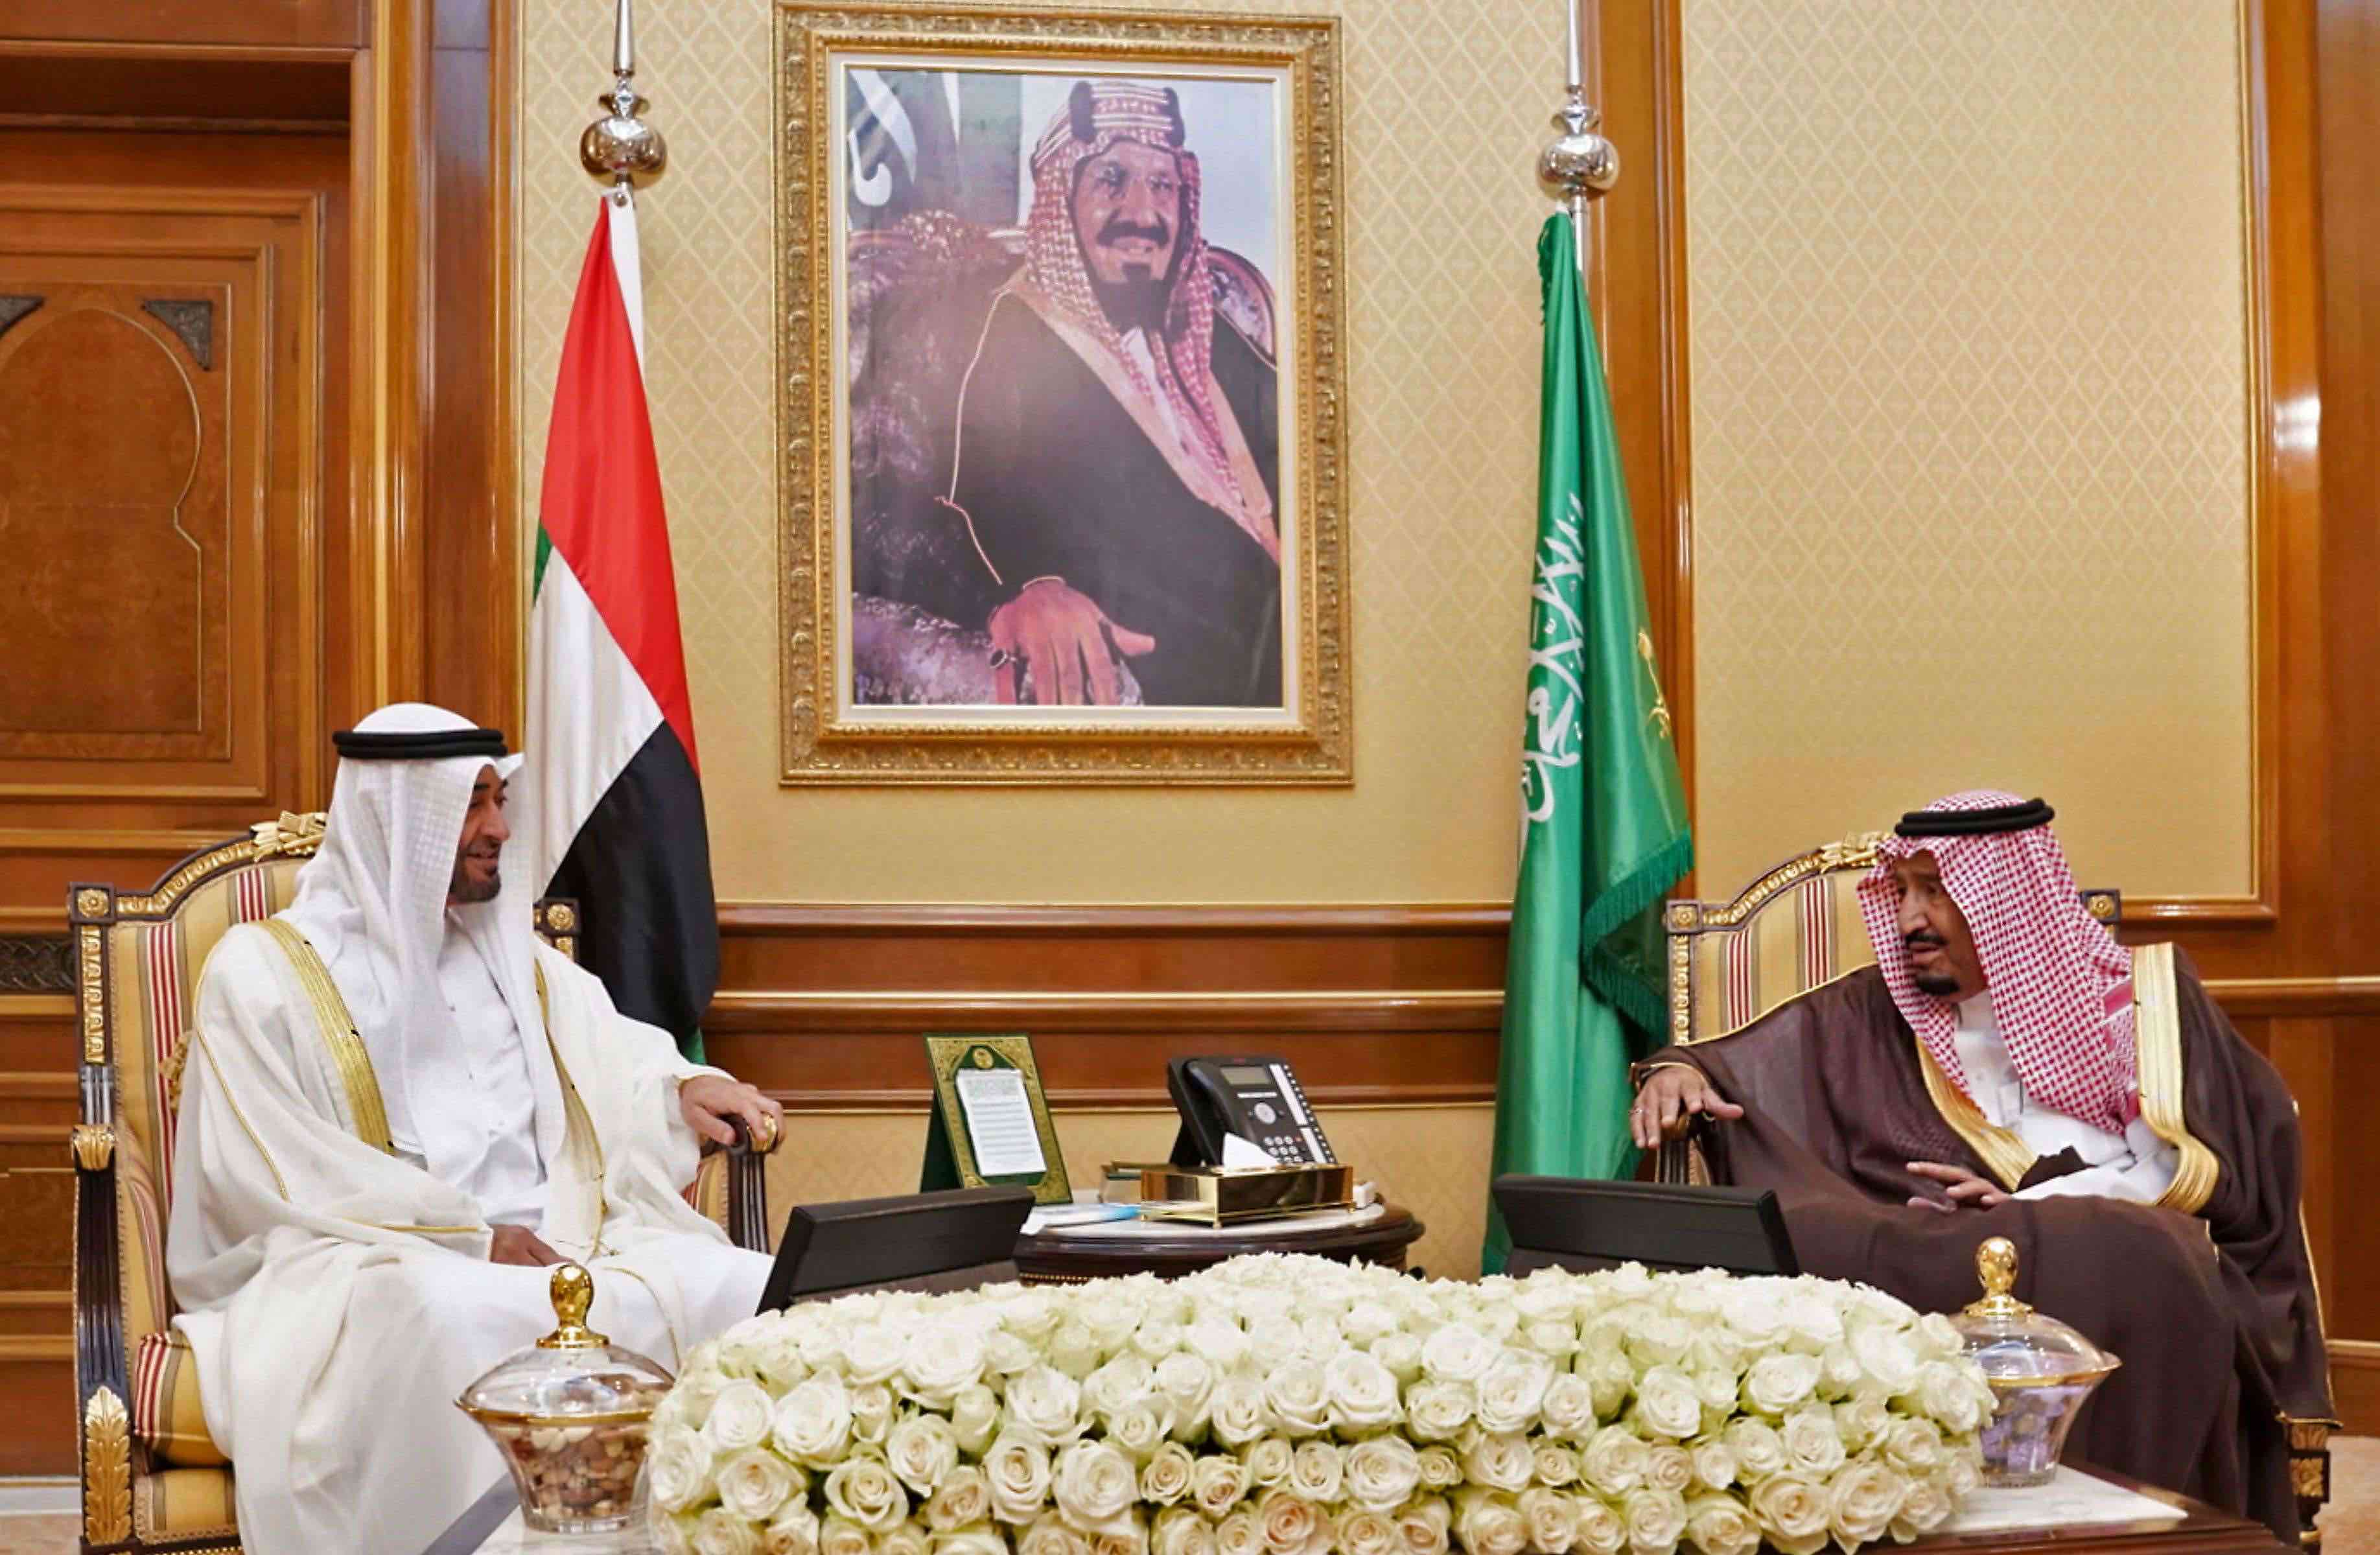 A loosening of UAE-Saudi ties has implications far beyond bilateral ties